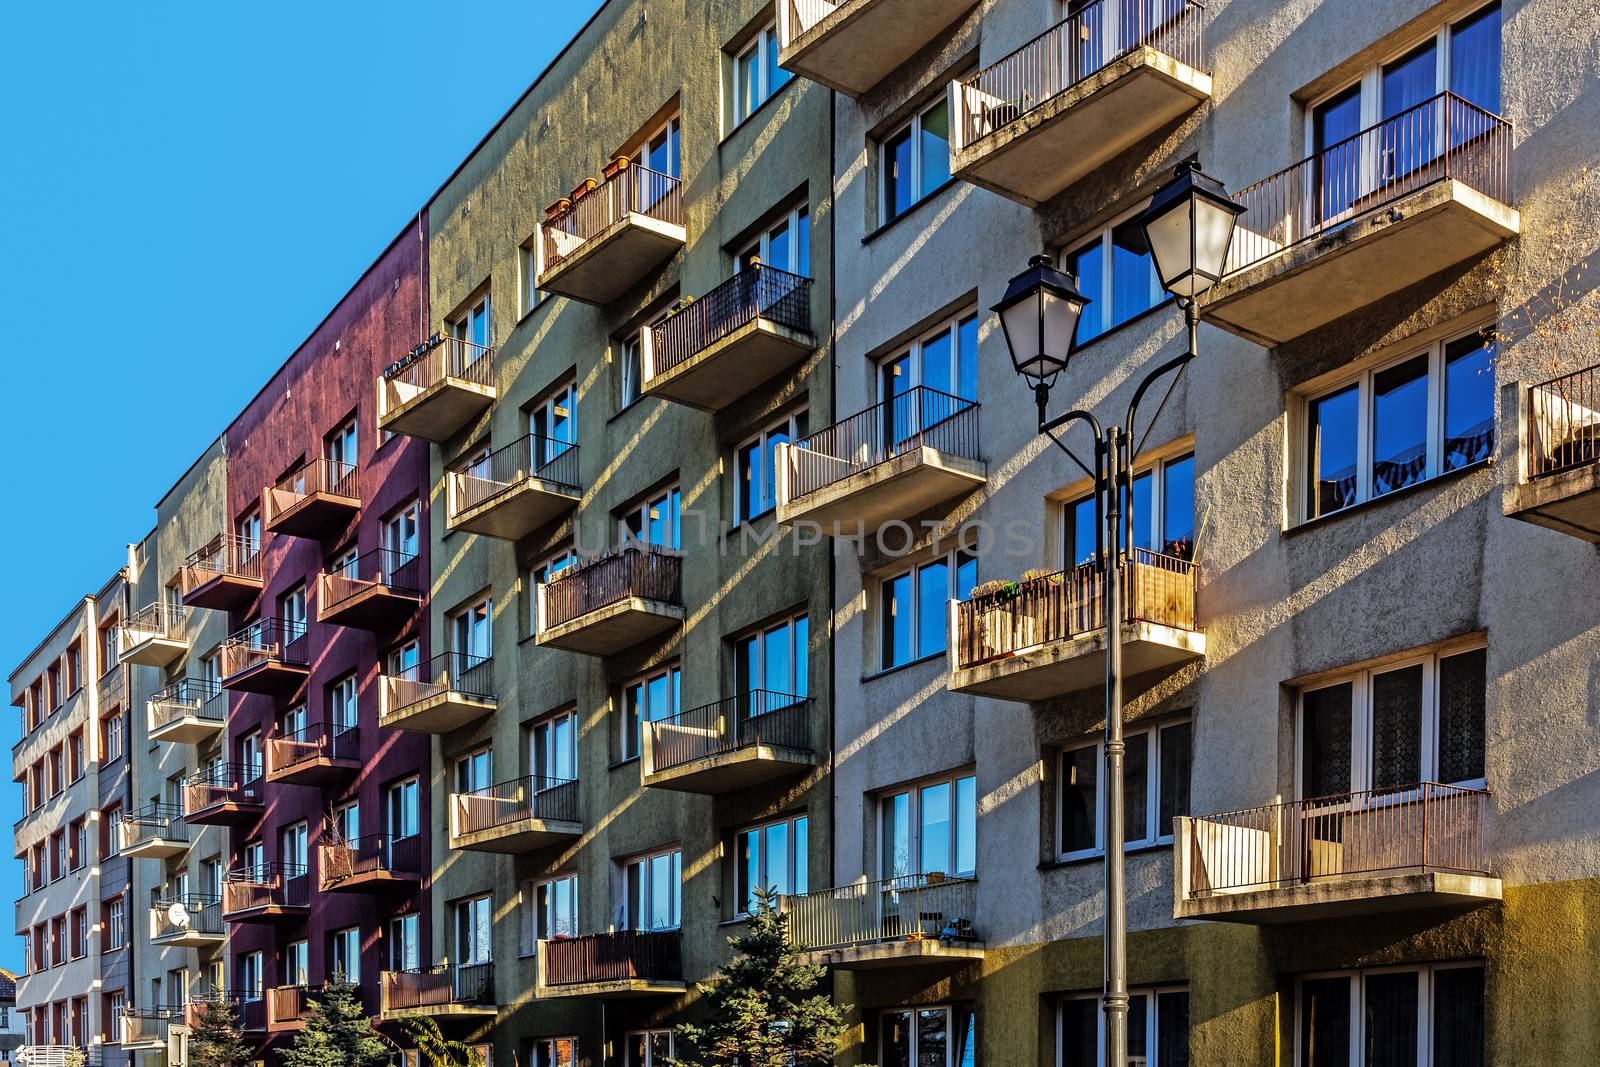 Ordinary residential blocks by pawel_szczepanski